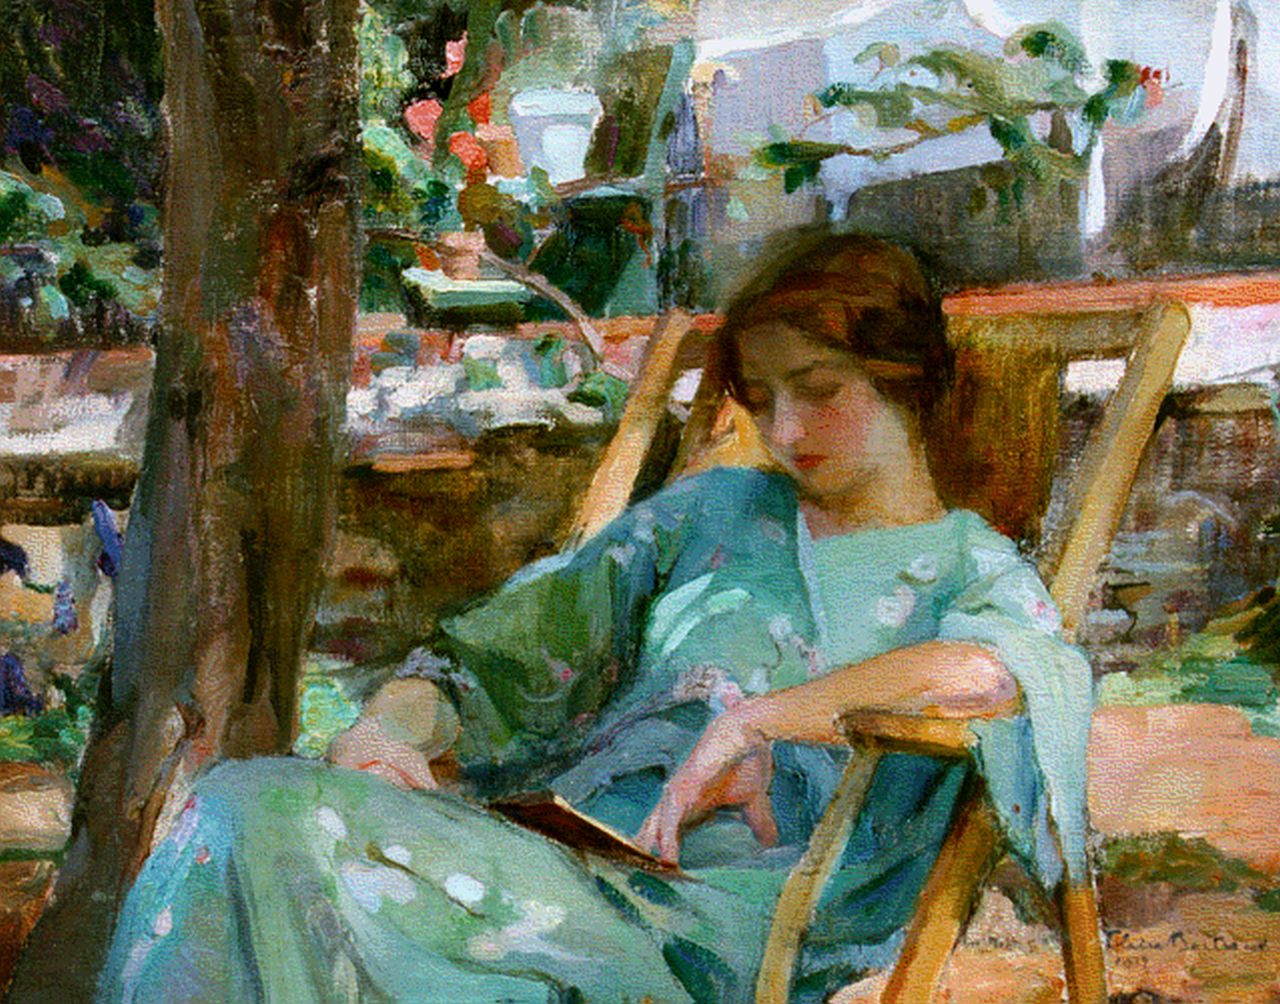 Claire Bertrand | Lezende vrouw in strandstoel in de tuin, olieverf op doek, 54,2 x 65,0 cm, gesigneerd r.o. en gedateerd 1912